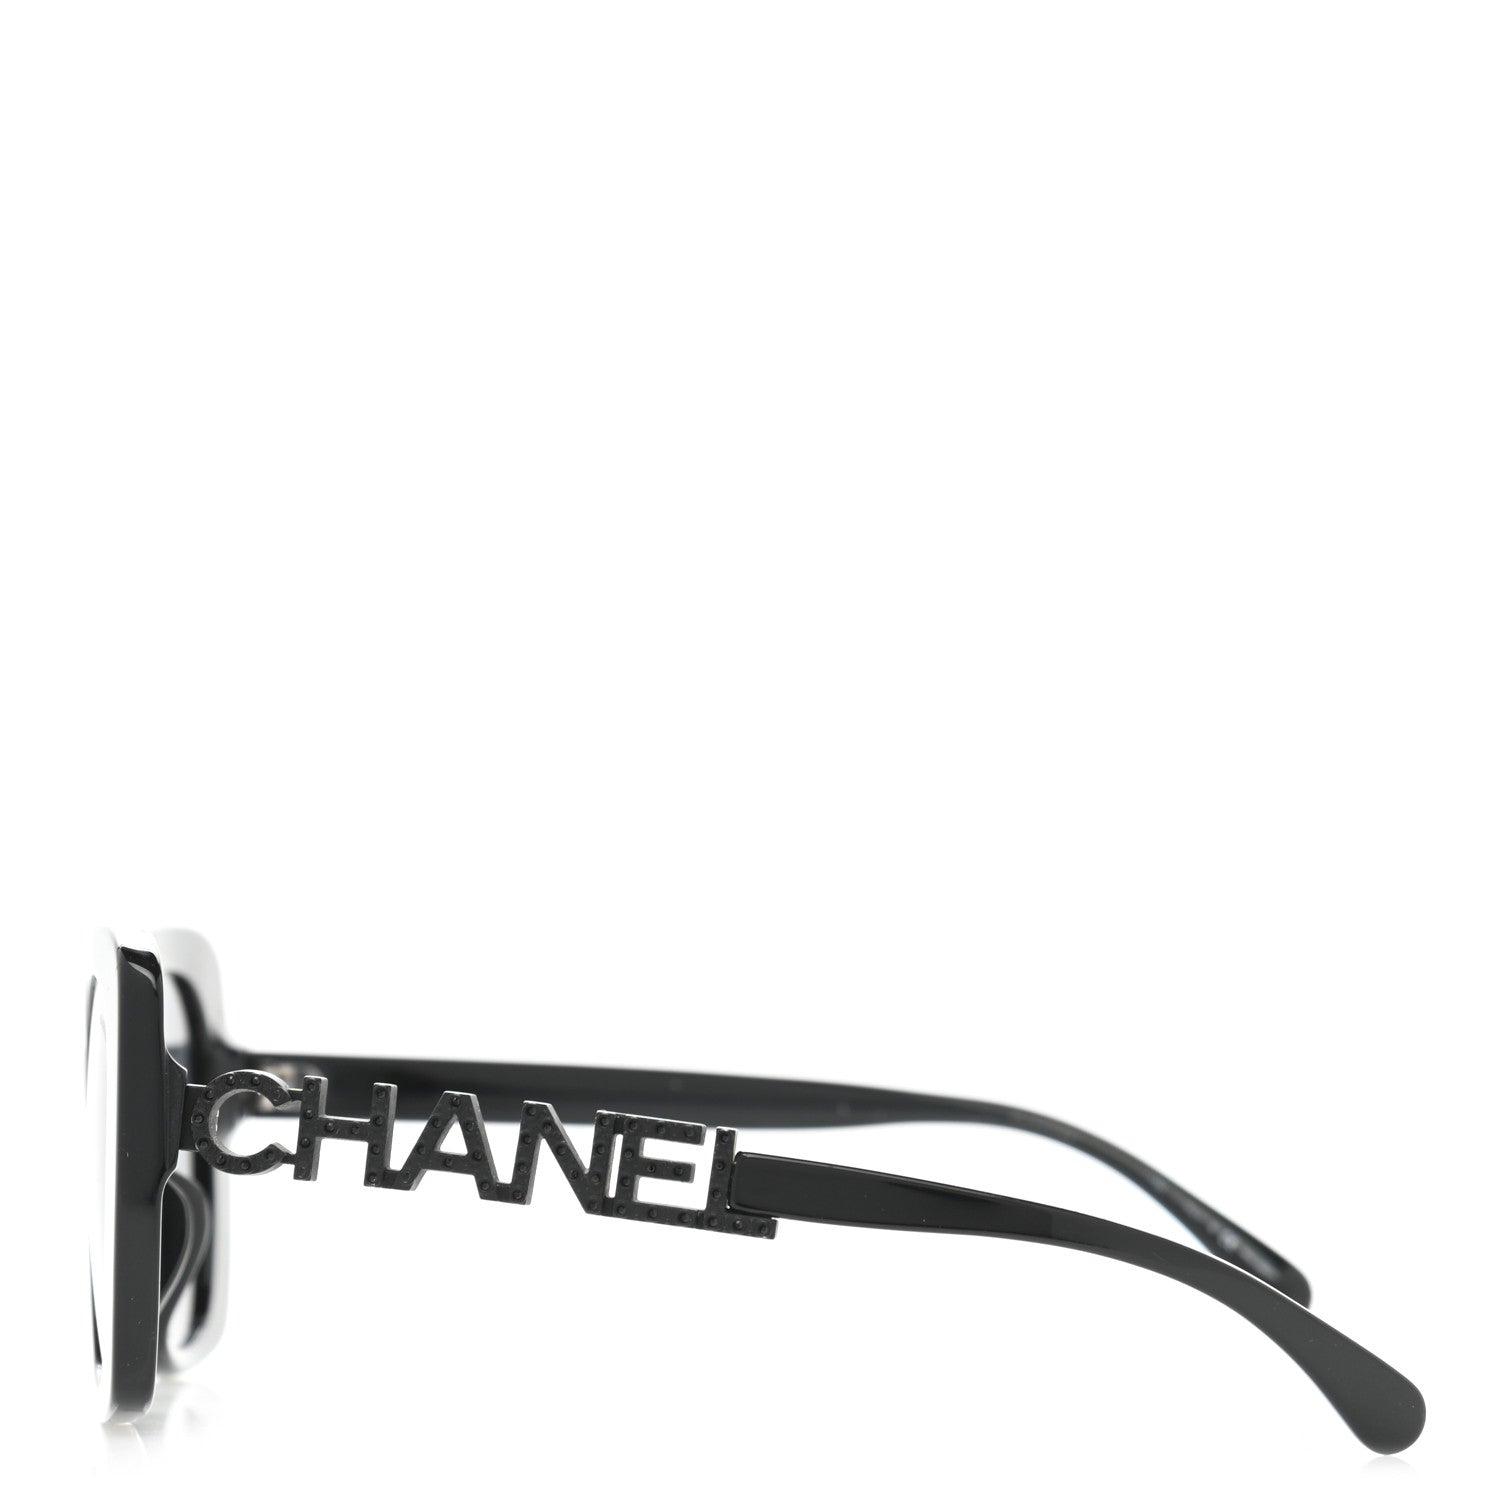 Sunglasses Chanel Black in Plastic - 31744453